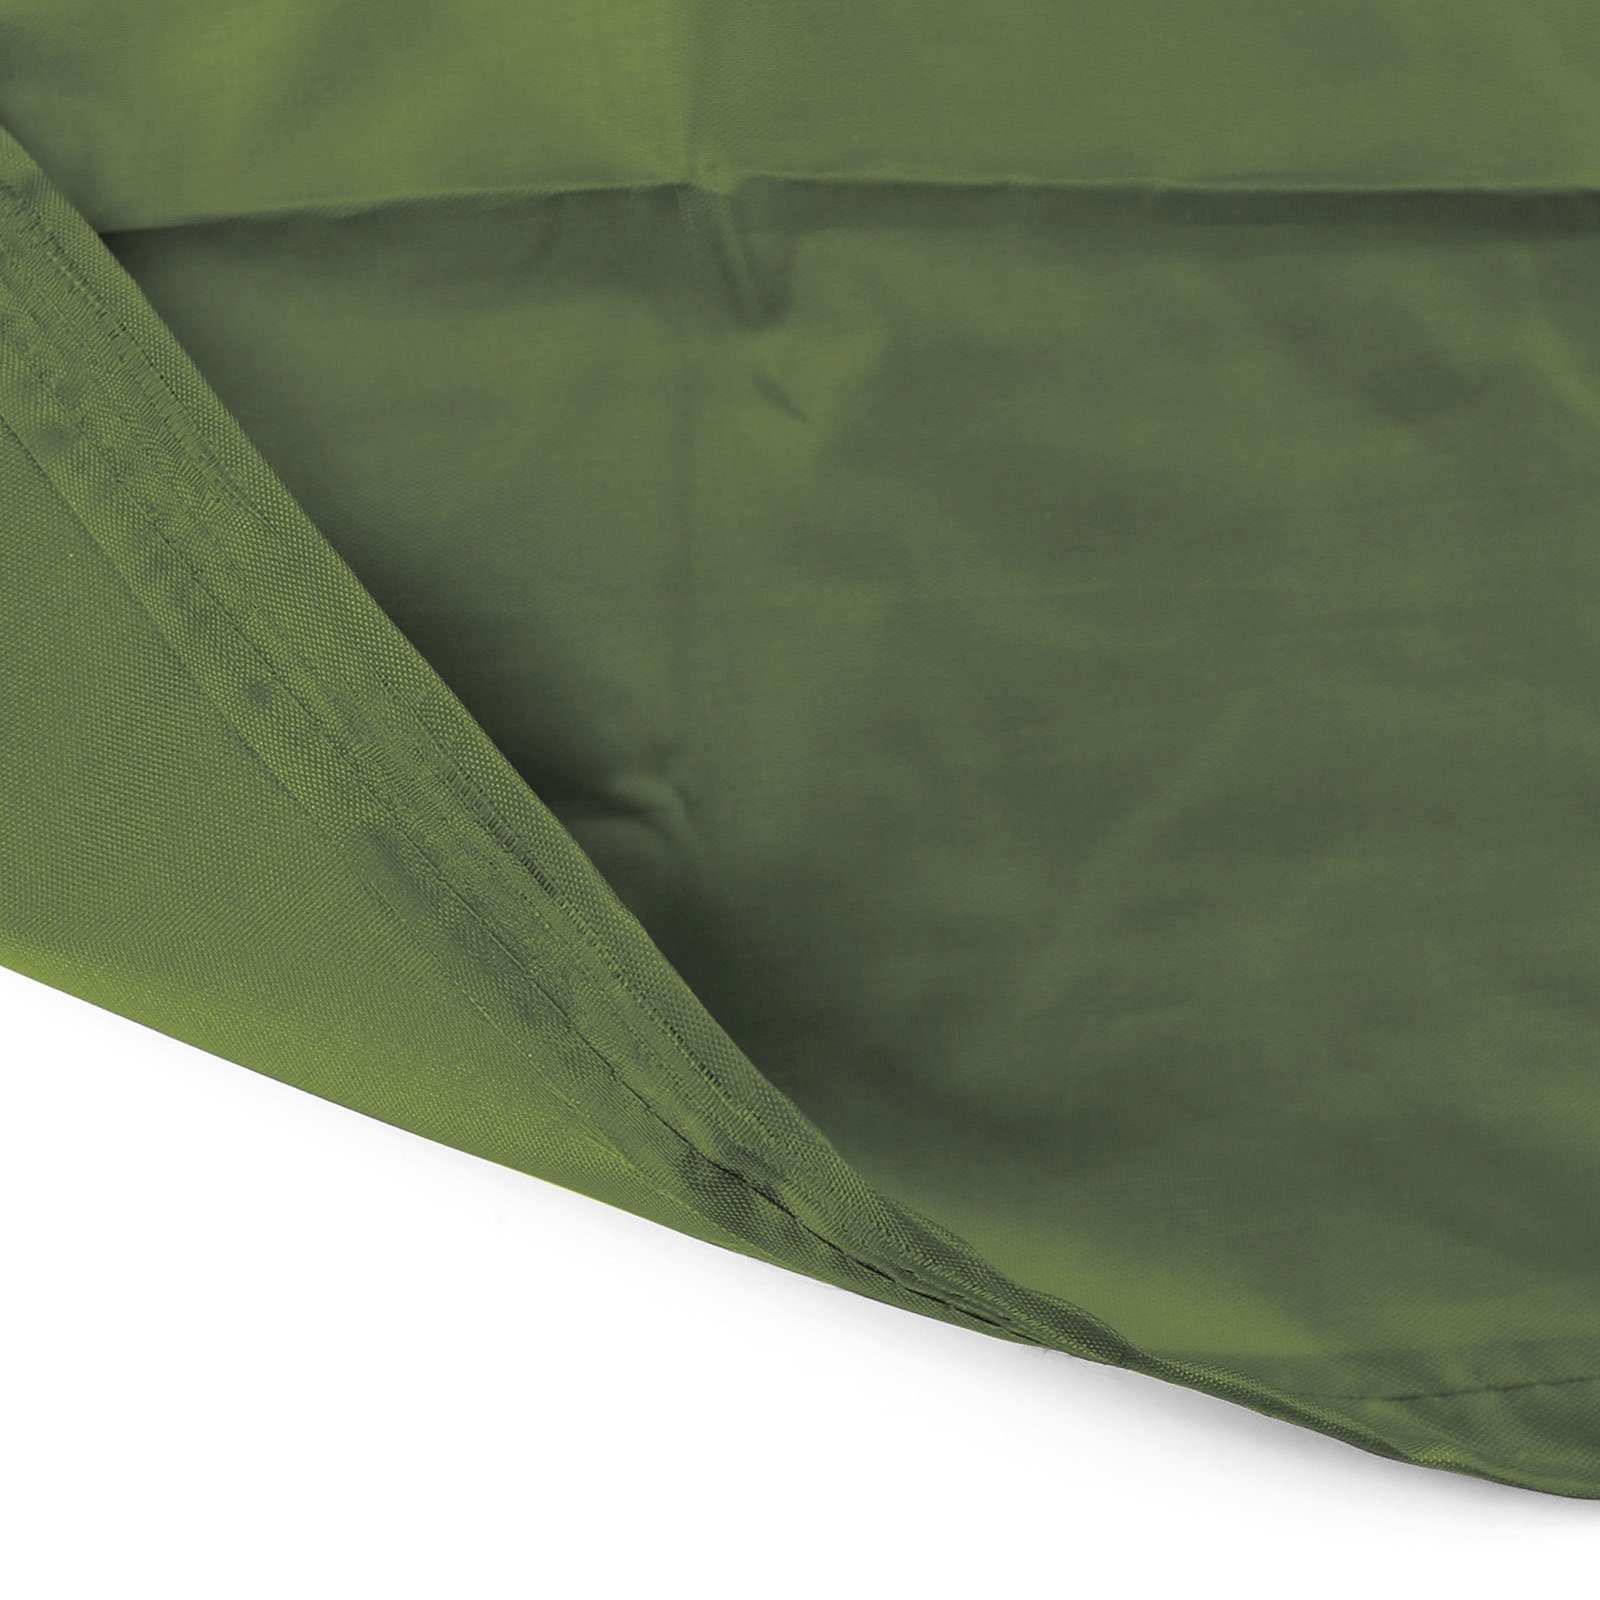 Premium Schutzhülle RAMROXX Hängesessel Hängesessel 190x100cm für Grün Schutzabdeckung Cover